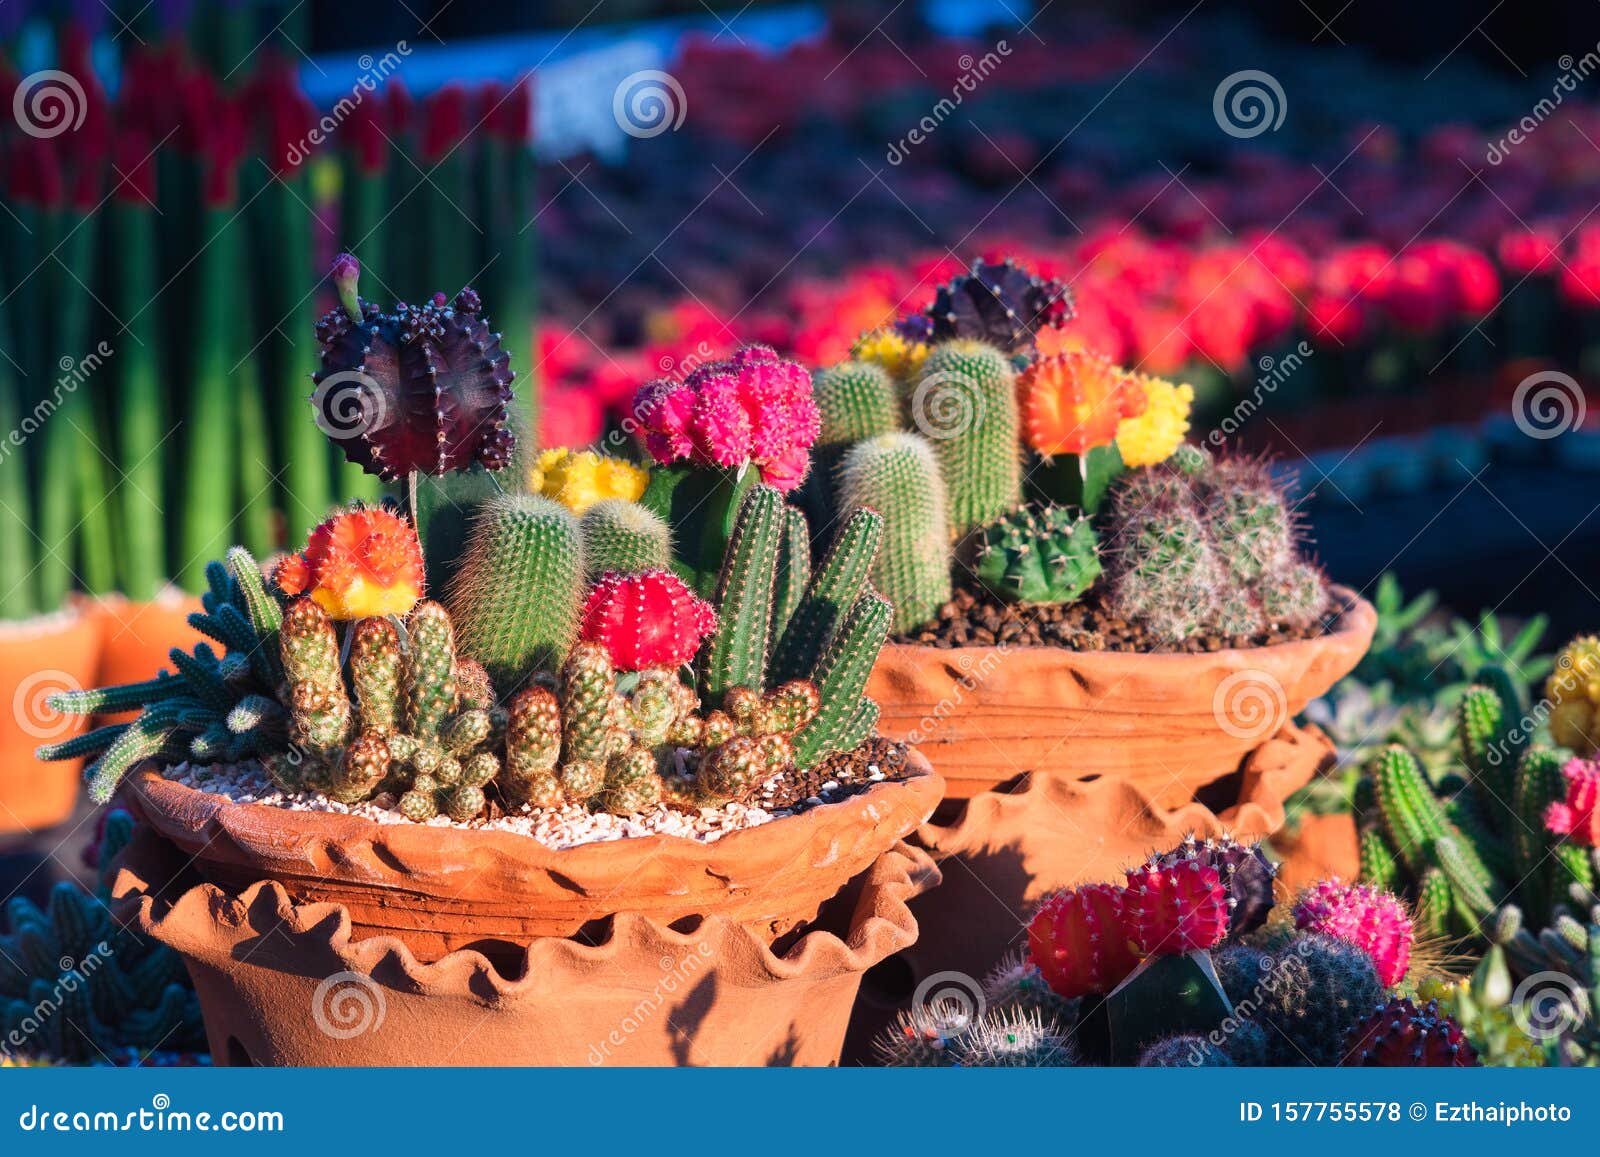 ComposiciÃ³n De PequeÃ±os Y Hermosos Arreglos De Cactus Y Succulents En  Macetas De Flores De Arcilla En La FlorerÃa. El Entorno D Foto de archivo -  Imagen de crecimiento, extracto: 157755578